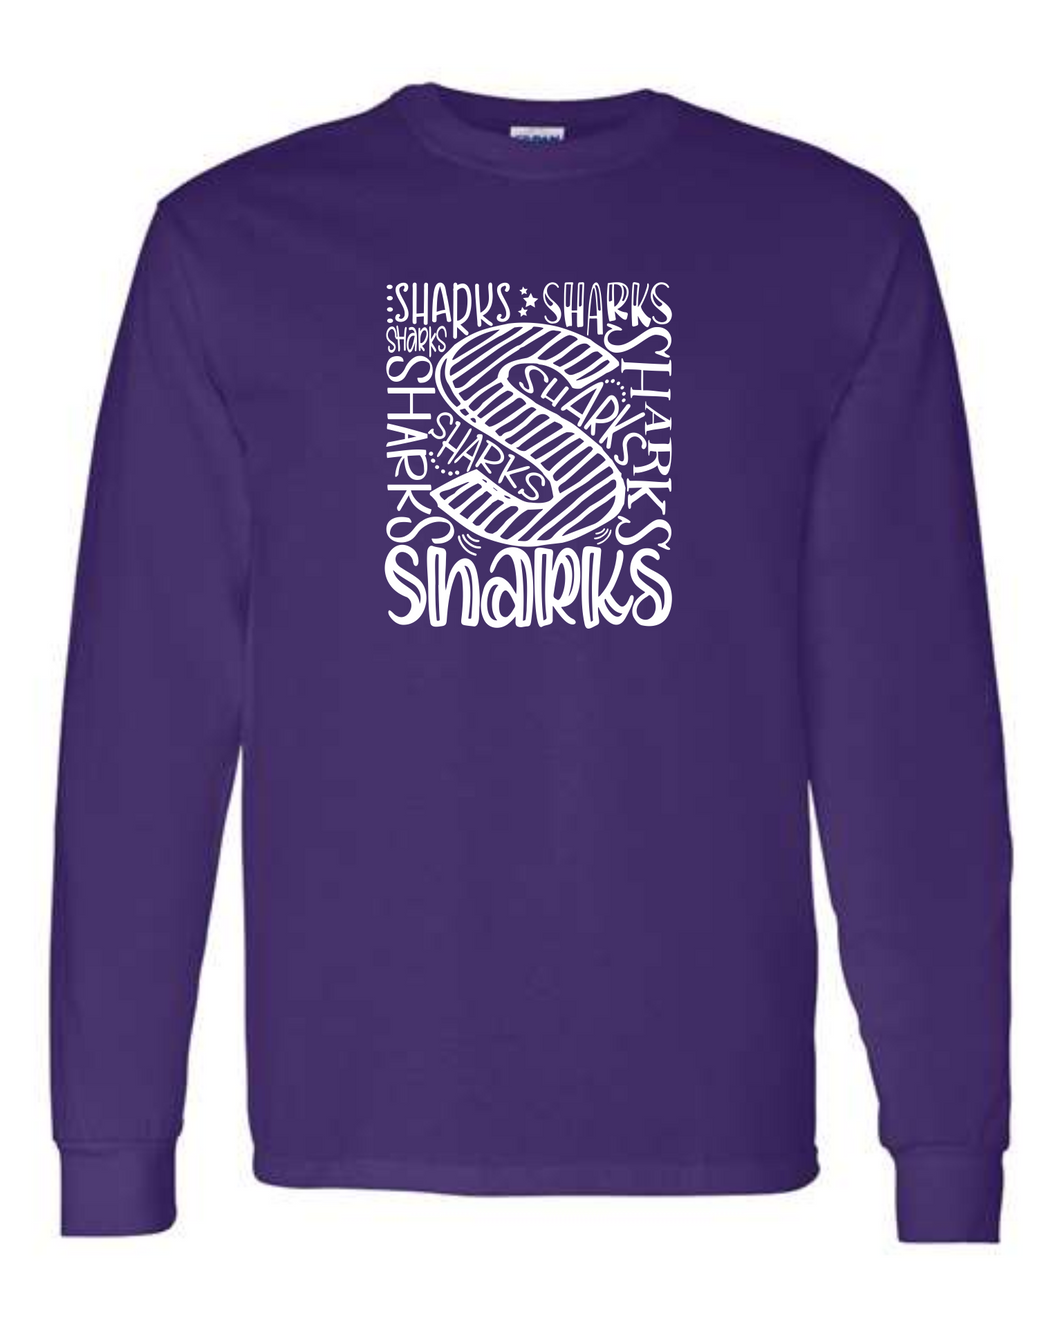 Sharks - Shark Spirit -  Long Sleeve T-shirt - Purple     SSP